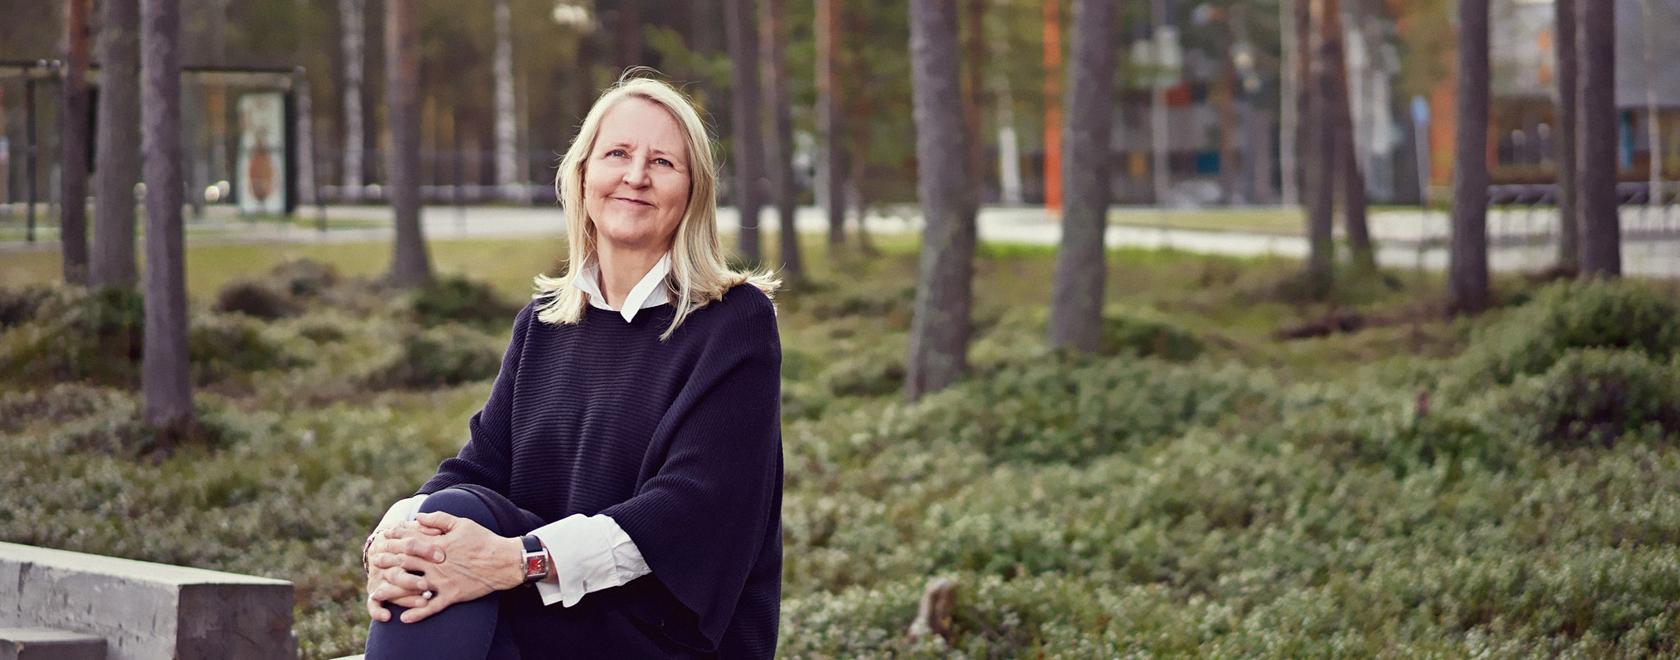 Anna-Maija Ylimaula sai Pohjois-Pohjanmaan rahaston palkinnon 2021. Kuva: Mikko Törmänen